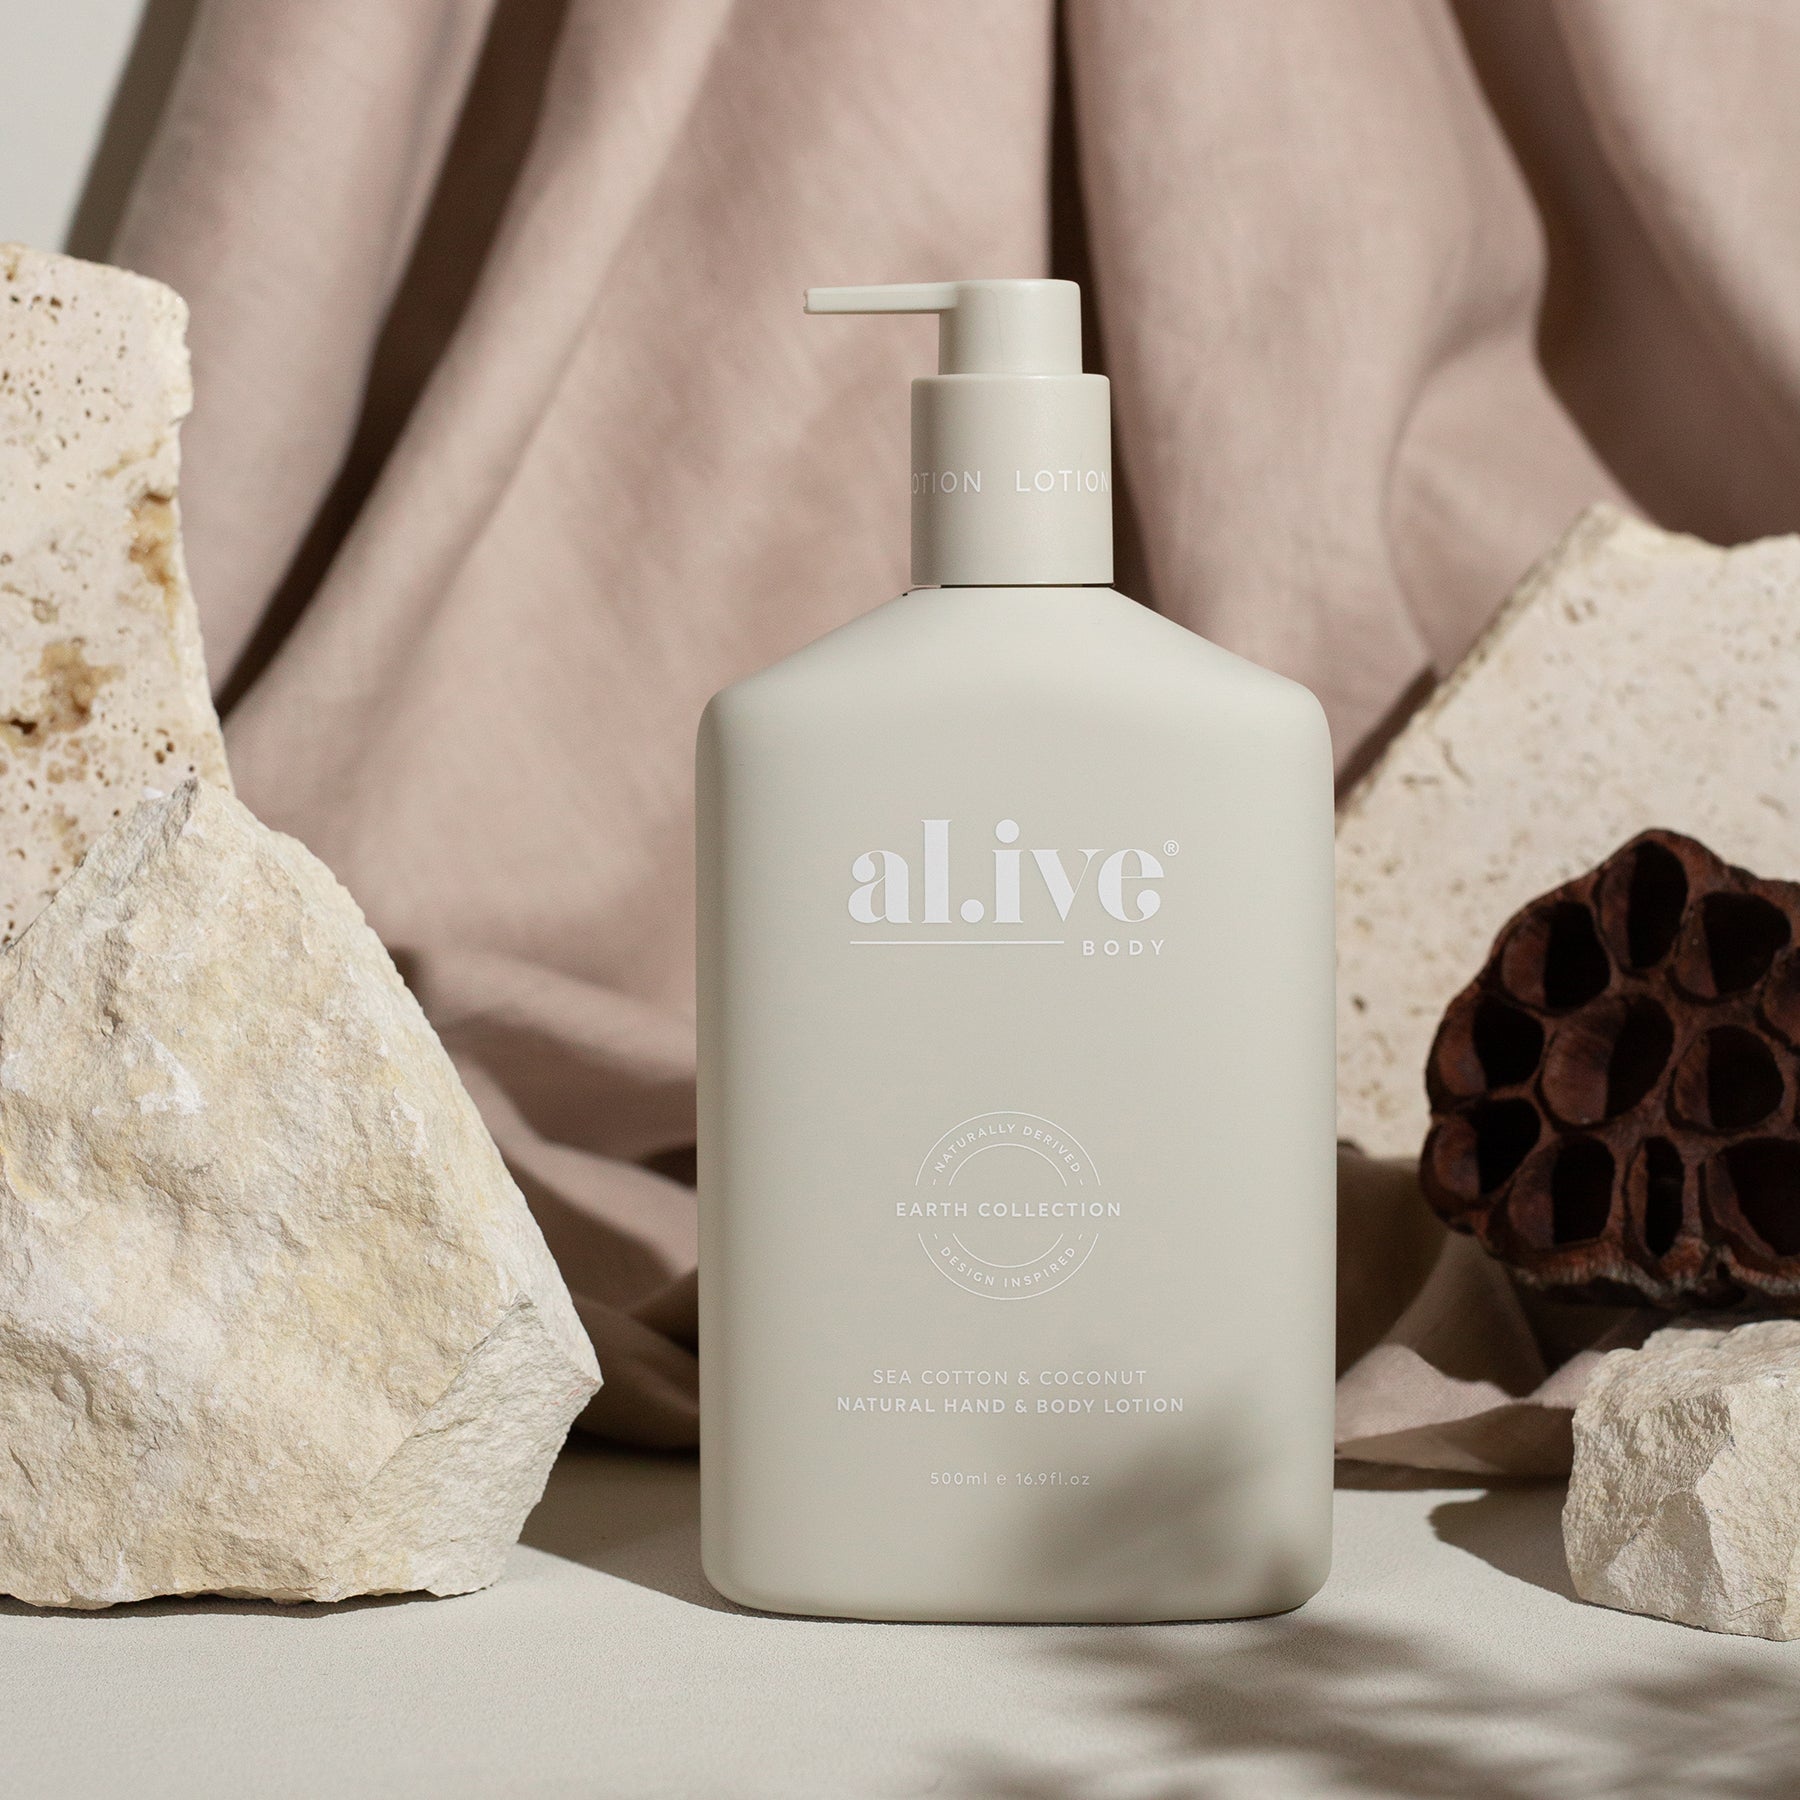 Al.ive Sea Cotton & Coconut Hand & Body Lotion